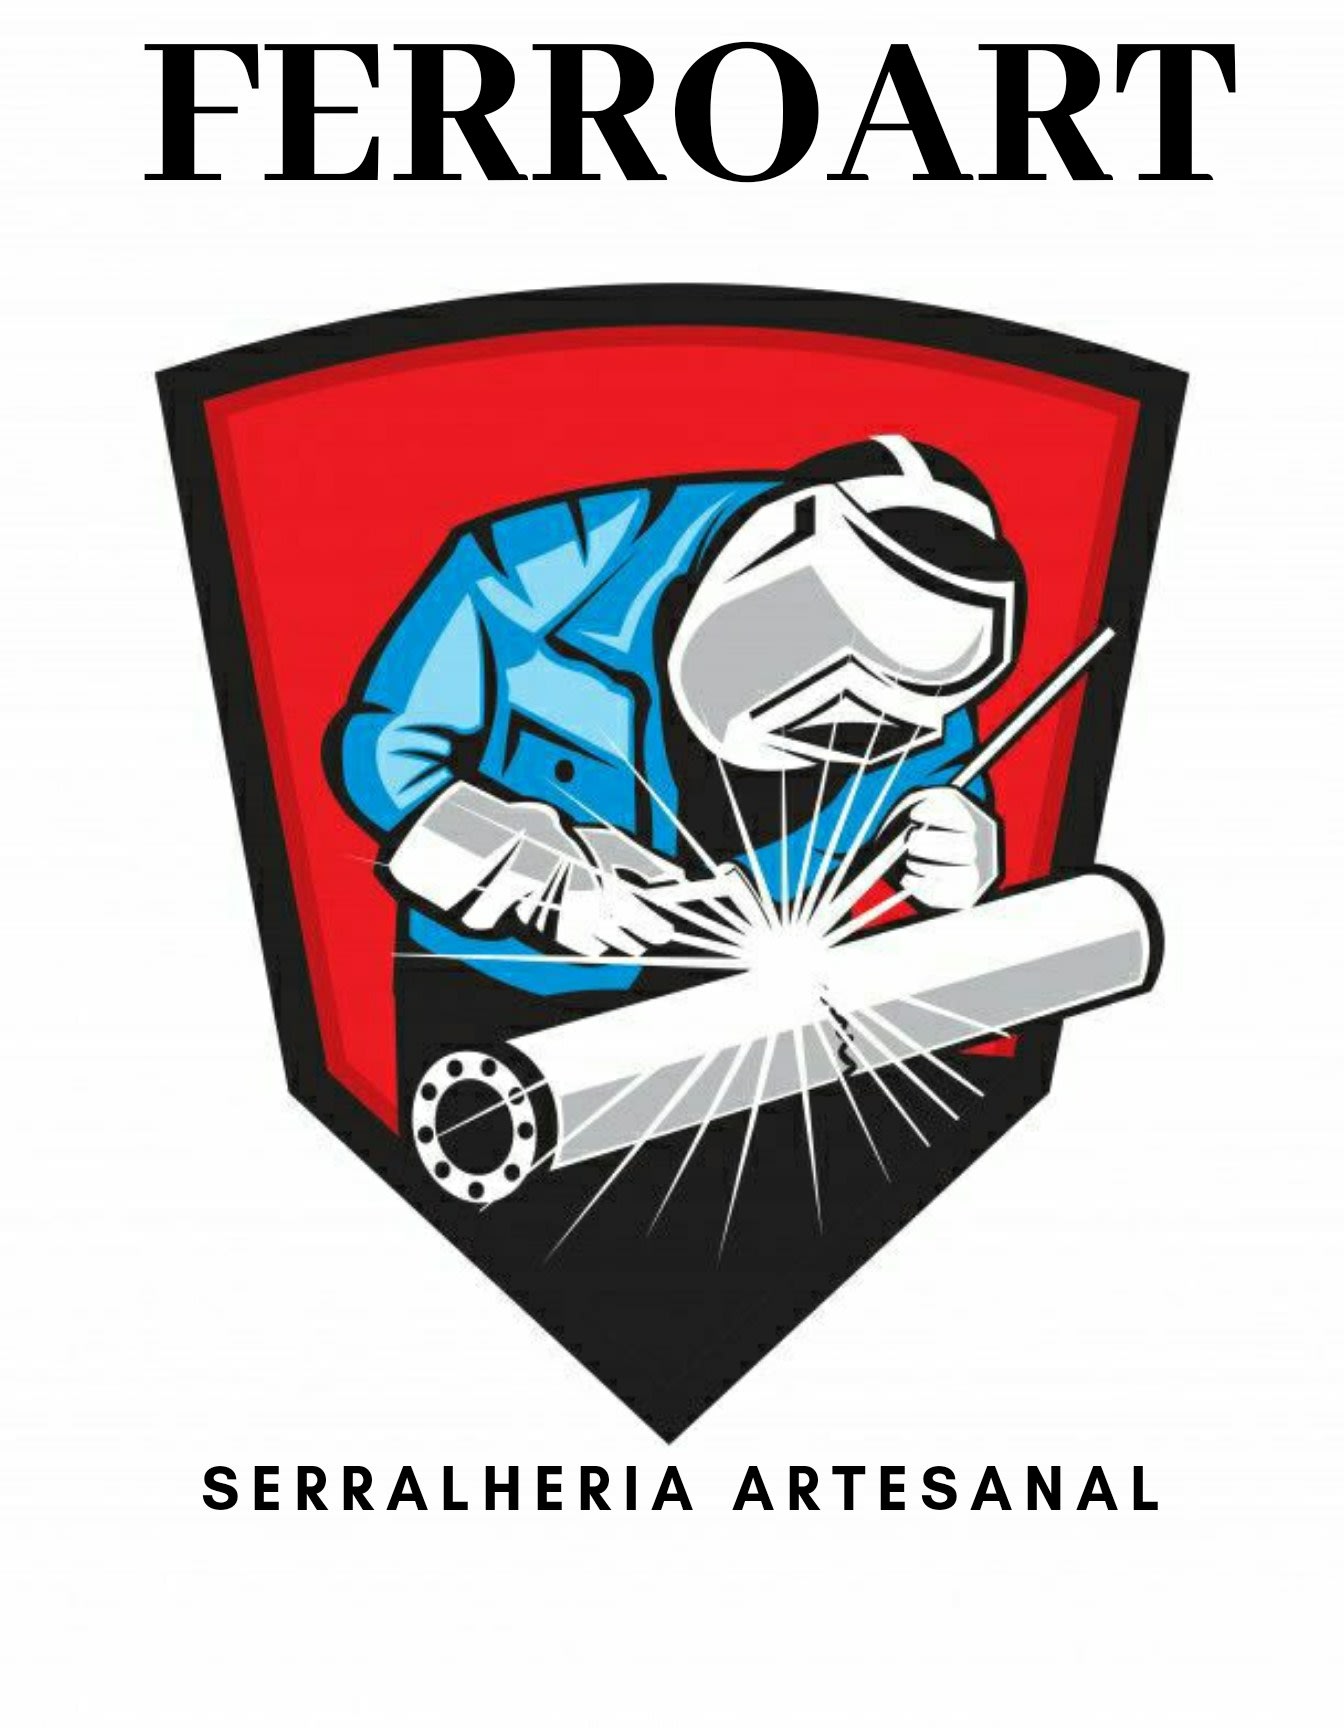 Ferroart Serralheria Artesanal